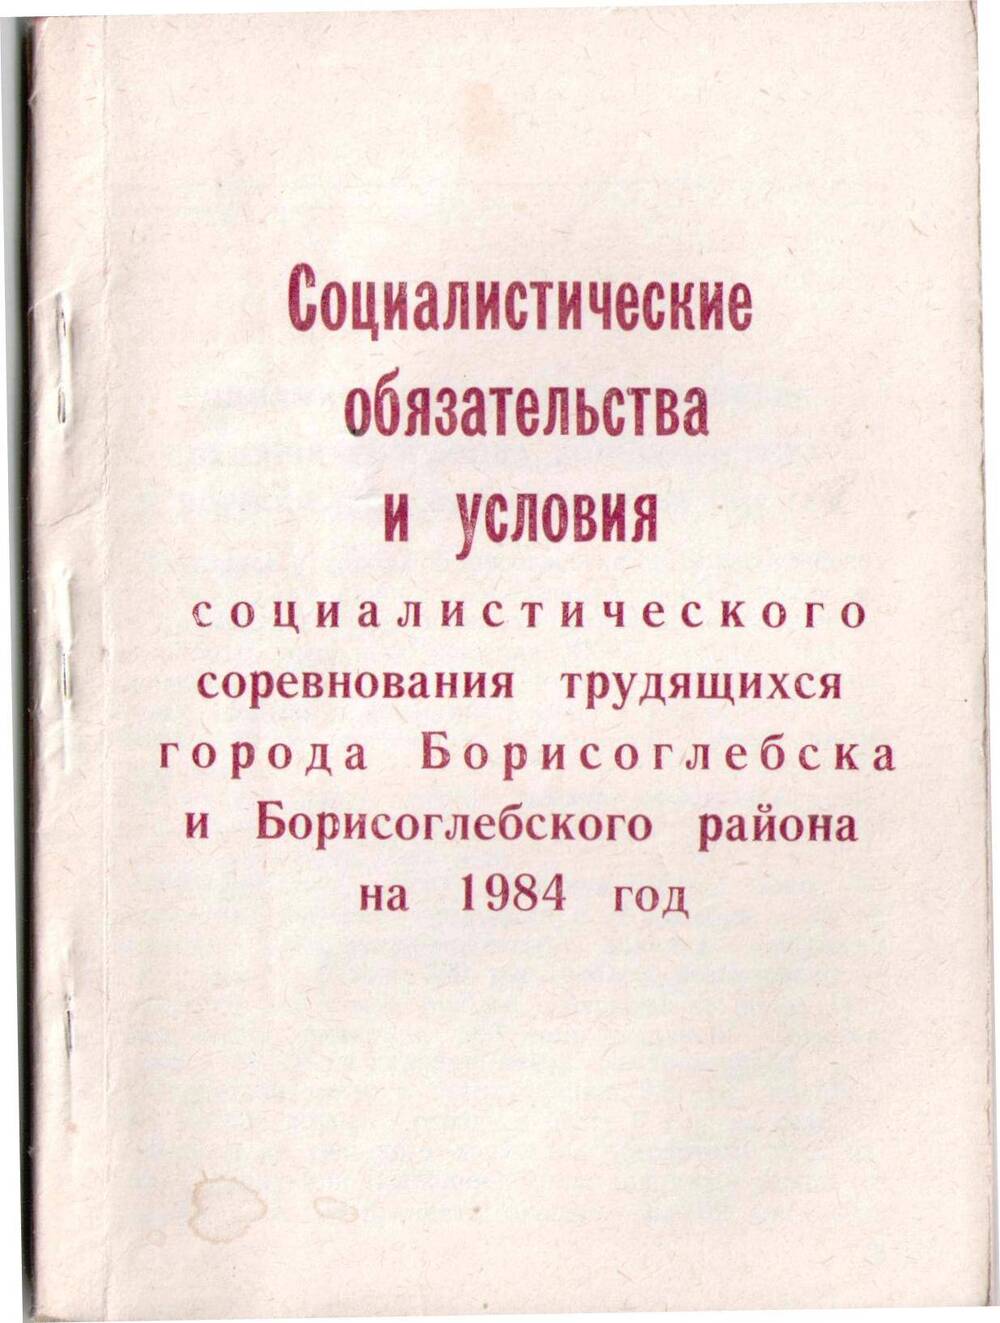 Книга Социалистические обязательства и условия социалистического соревнования трудящихся города Борисоглебска и Борисоглебского района на 1984 год.